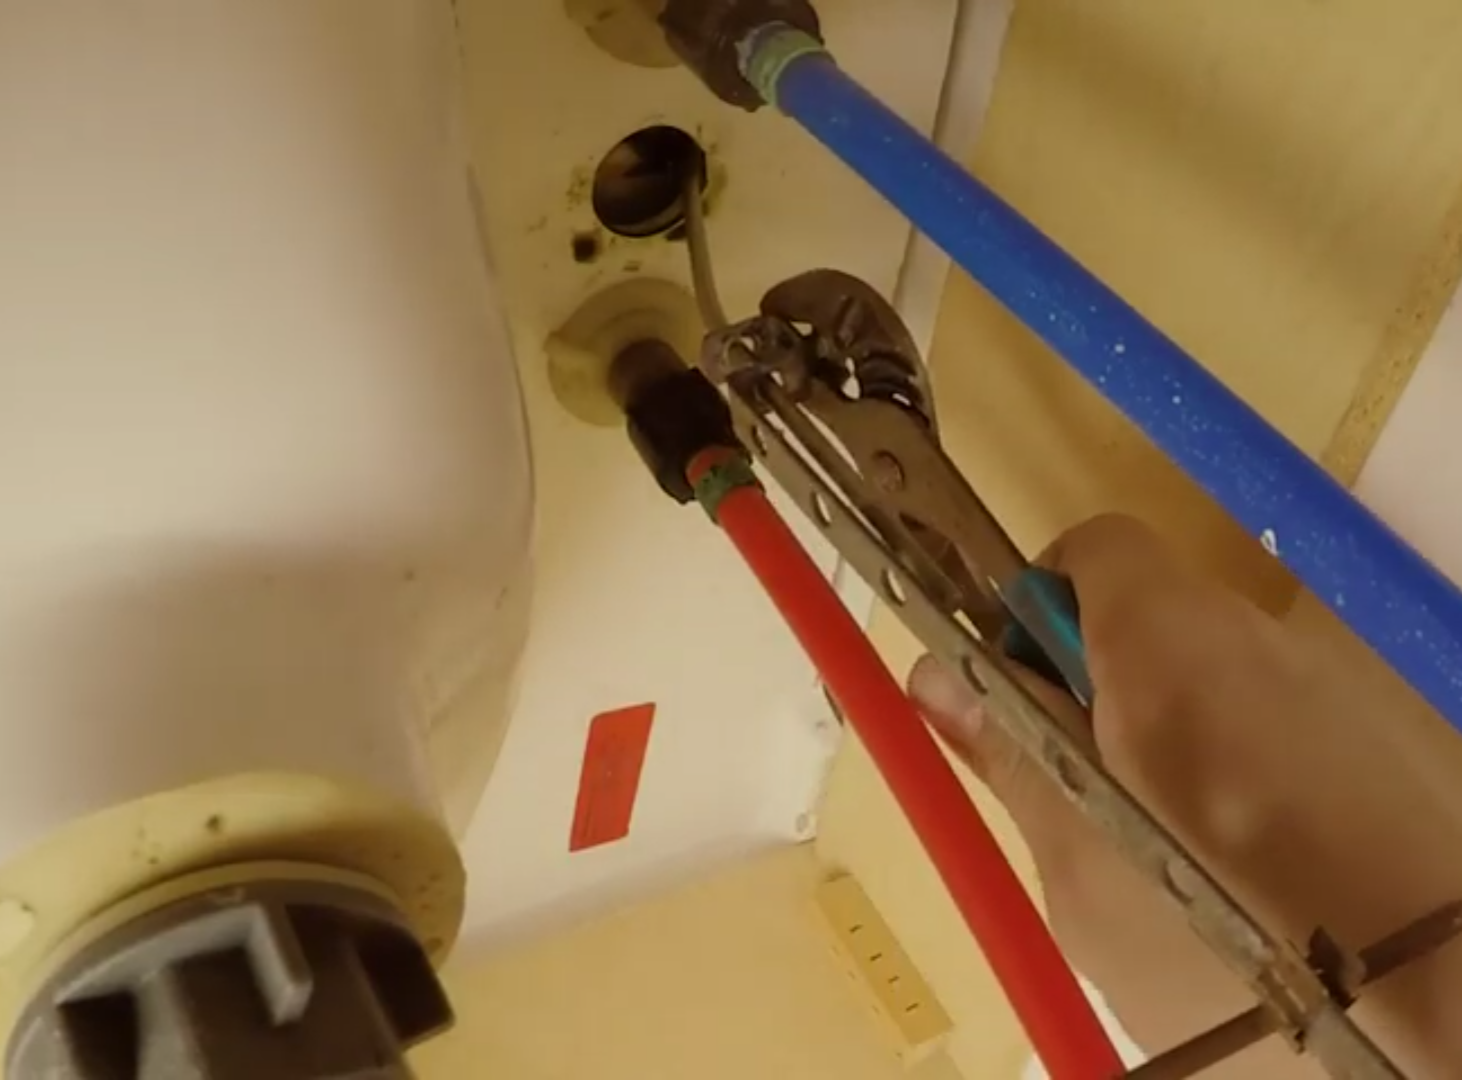 fix bathroom sink - tighten the screw